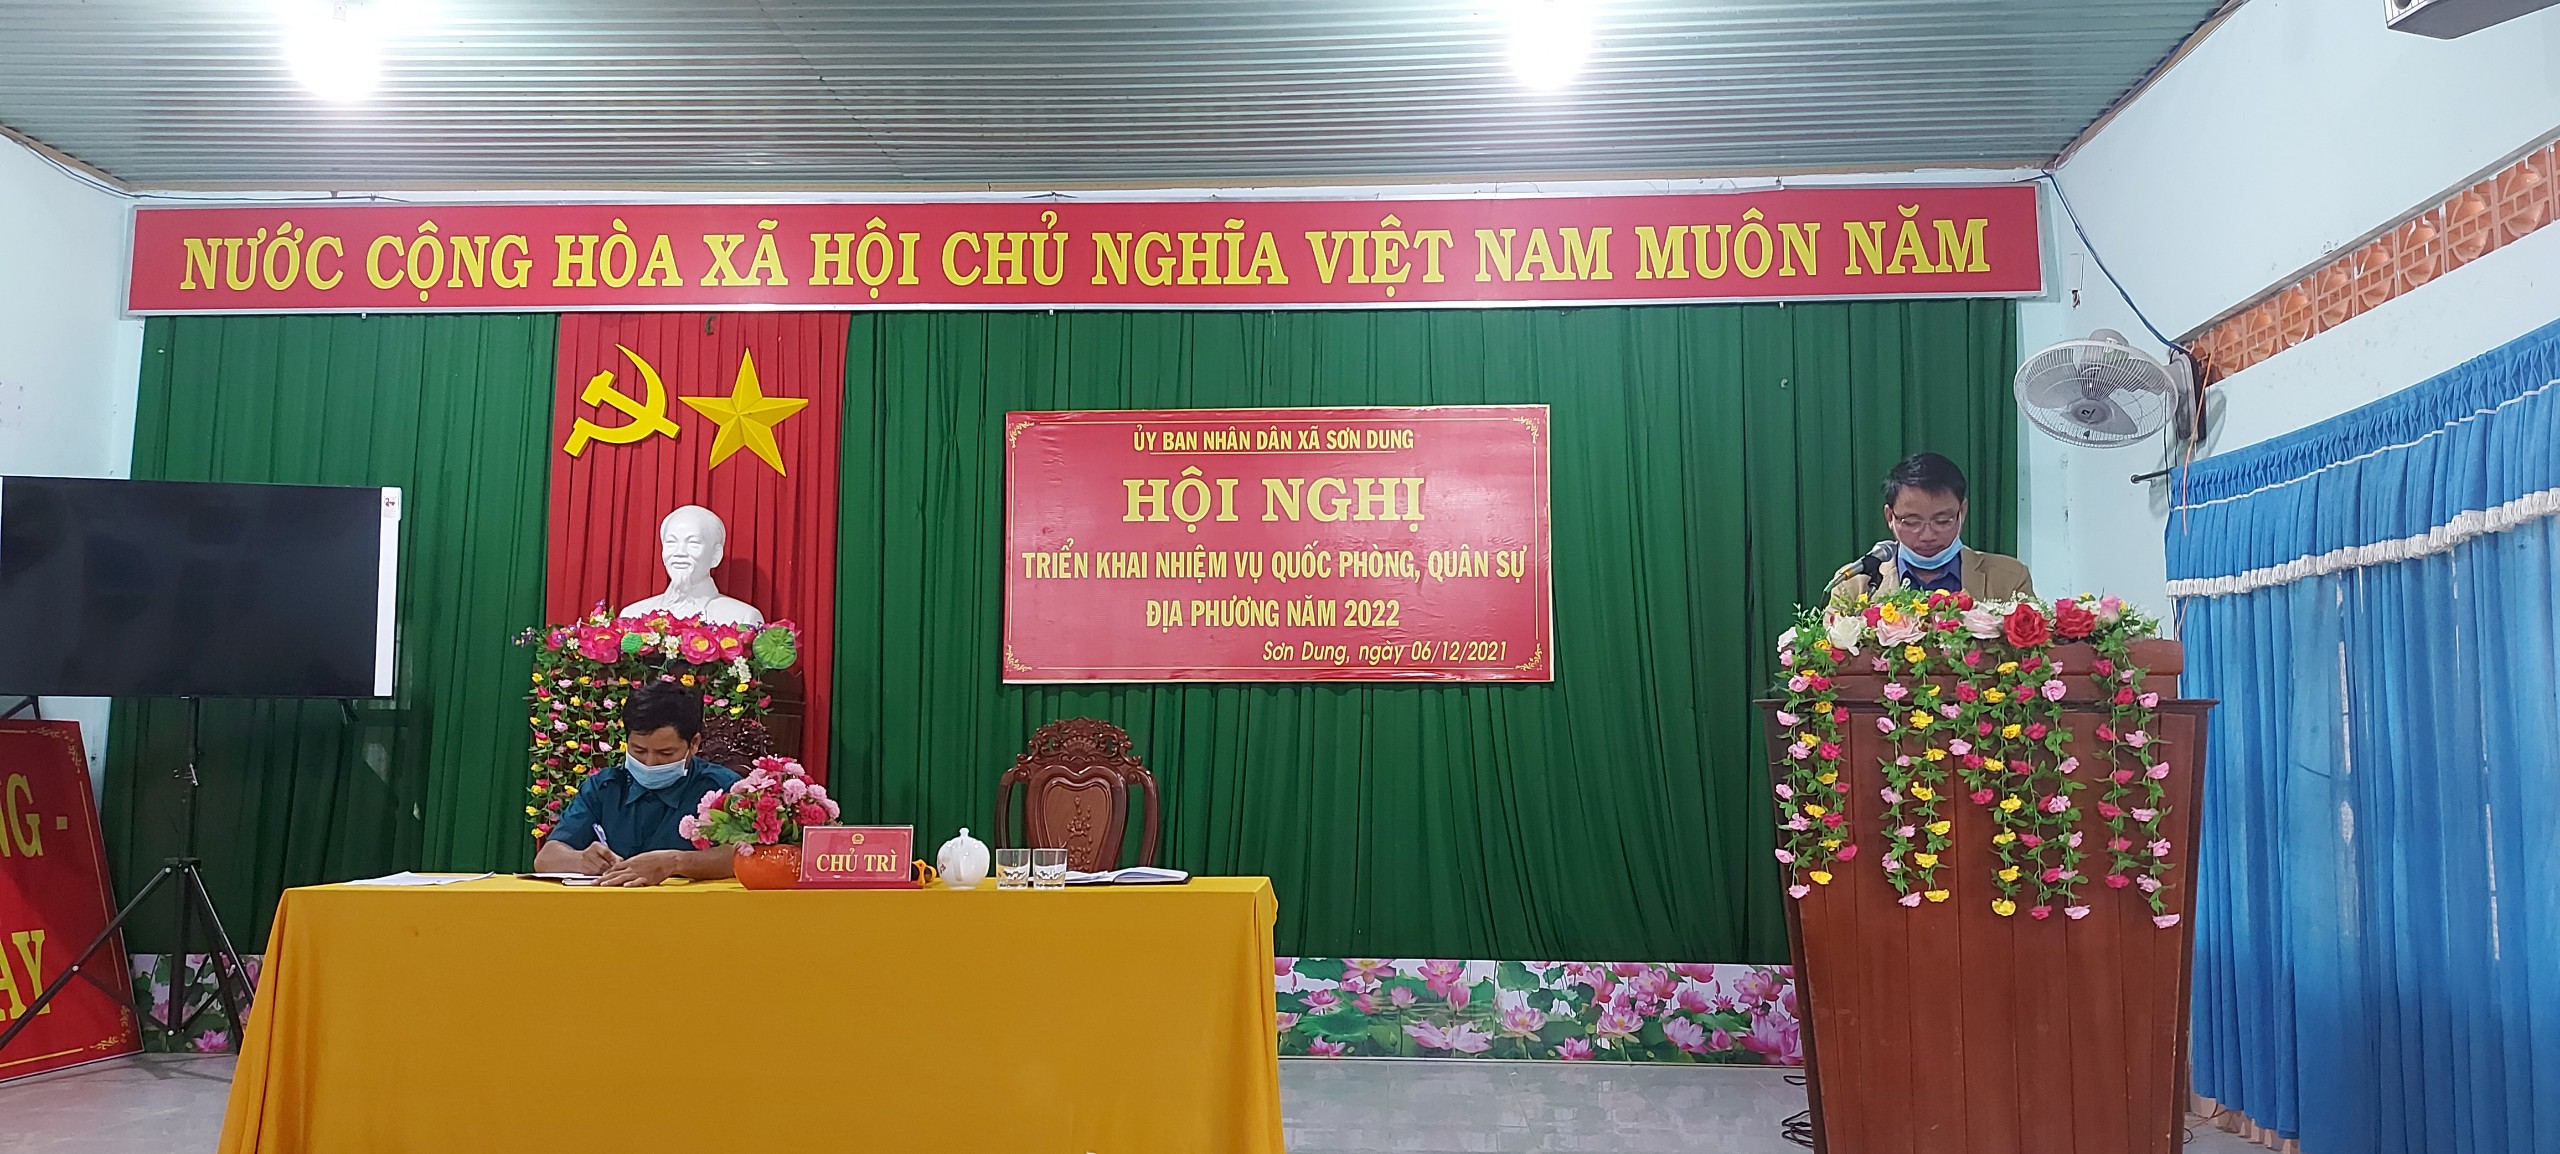 Ngày 06/12/2021, UBND xã Sơn Dung tổ chức Hội nghị triển khai nhiệm vụ quốc phòng, quân sự địa phương năm 2022